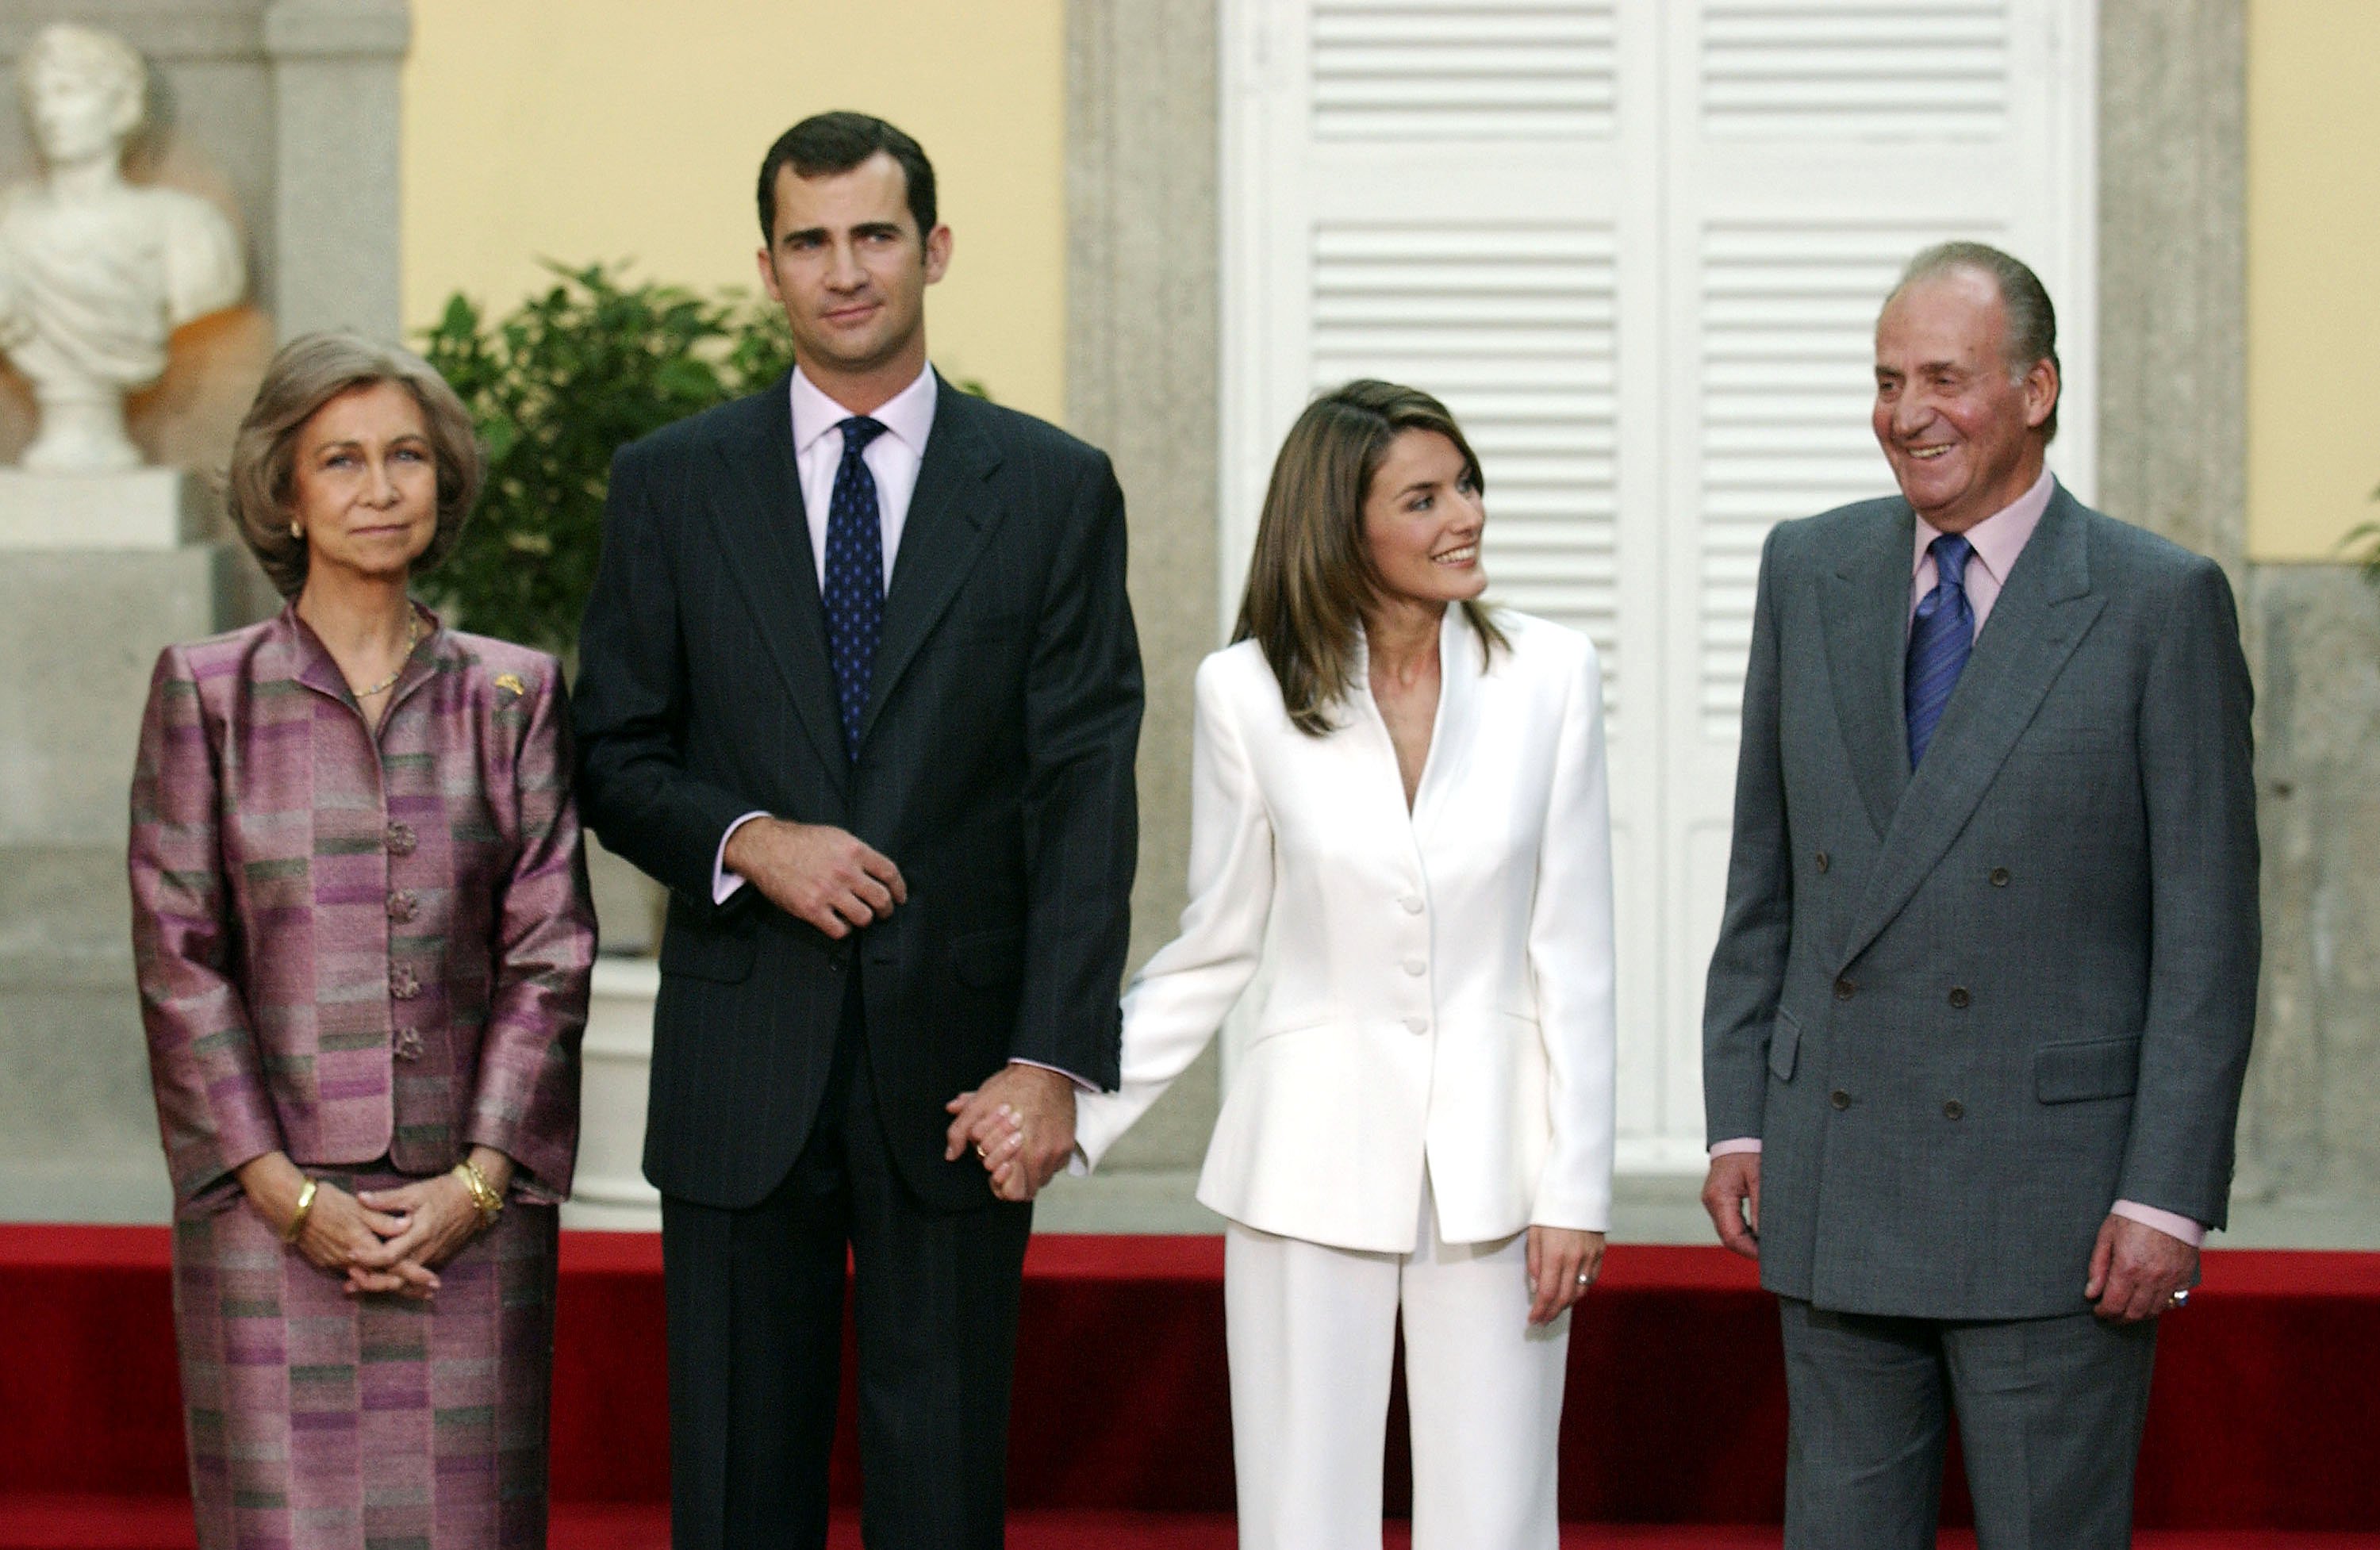 Reina Sofía, Príncipe Felipe, Letizia Ortiz y el Rey Juan Carlos en ceremonia de compromiso oficial de Felipe y Letizia en el jardín del Palacio Pardo en noviembre de 2003. | Foto: Getty Images